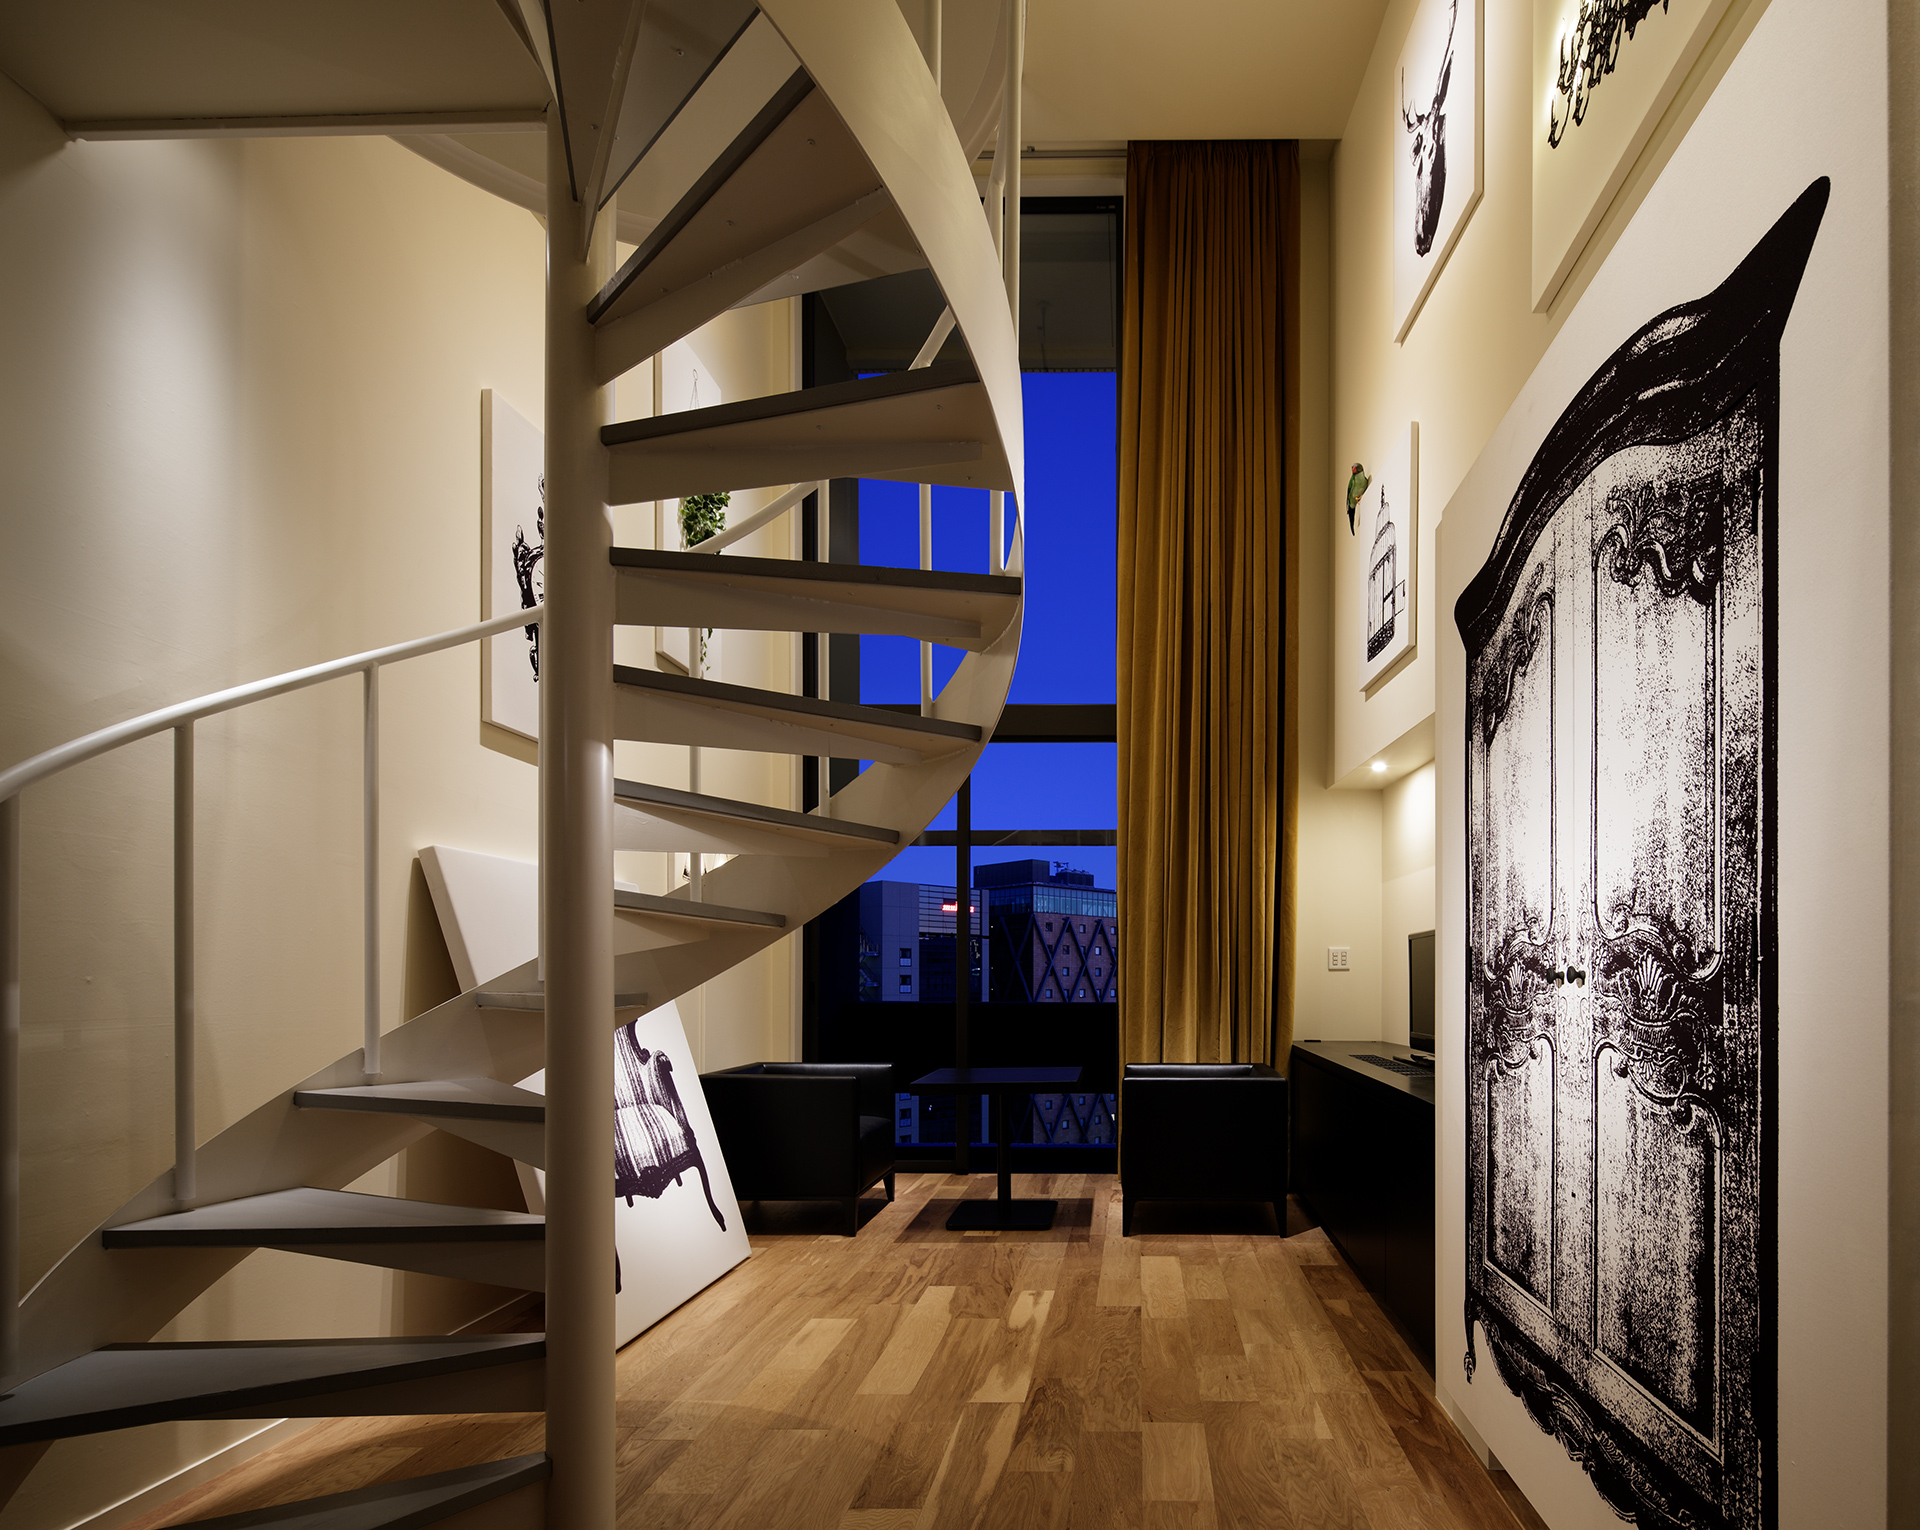 「渋谷グランベルホテル」のフェミニンスイートはキャンバスの部屋で、椅子や照明、クローゼットなどが描かれたキャンバスを壁面全体にレイアウト。すべてのキャンバスが実際の家具やプロダクトとして機能し、たとえばクローゼットは扉を開け、中に衣類を掛けることができる（写真：Nacasa & Partners）